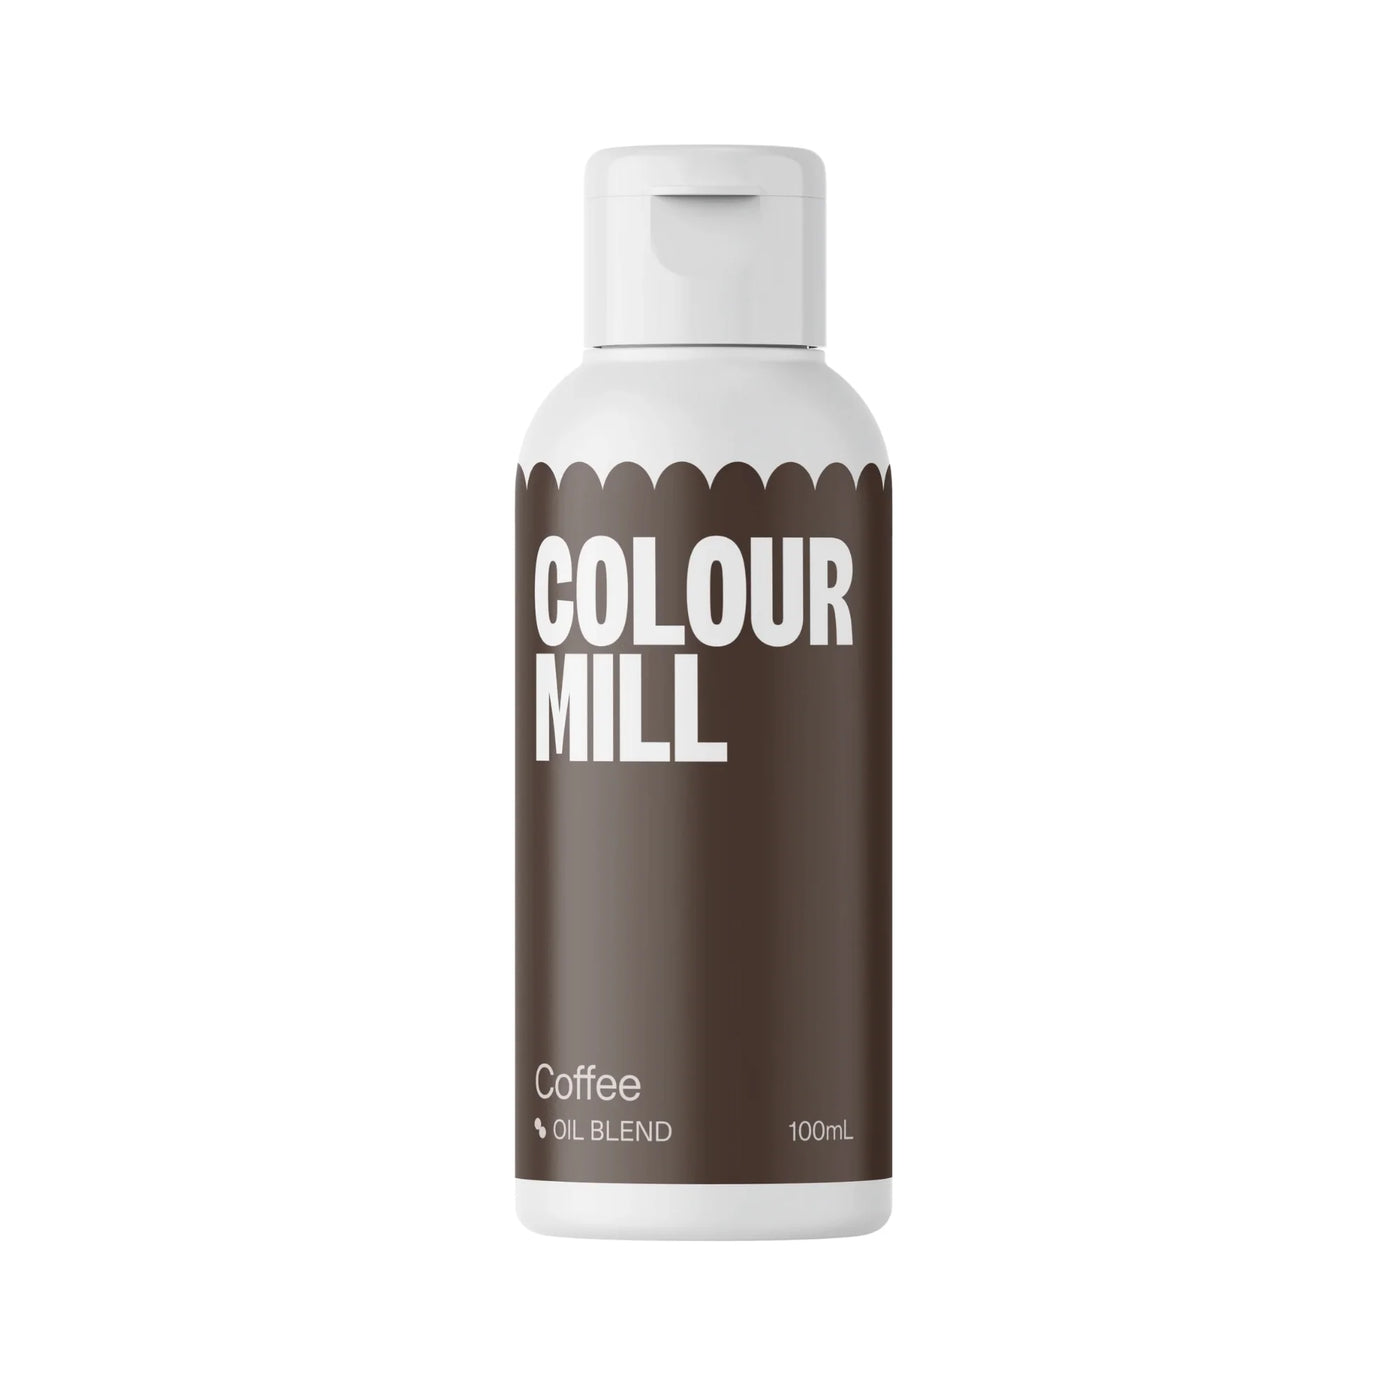 Colorante liposolubile - Color Mill Coffee